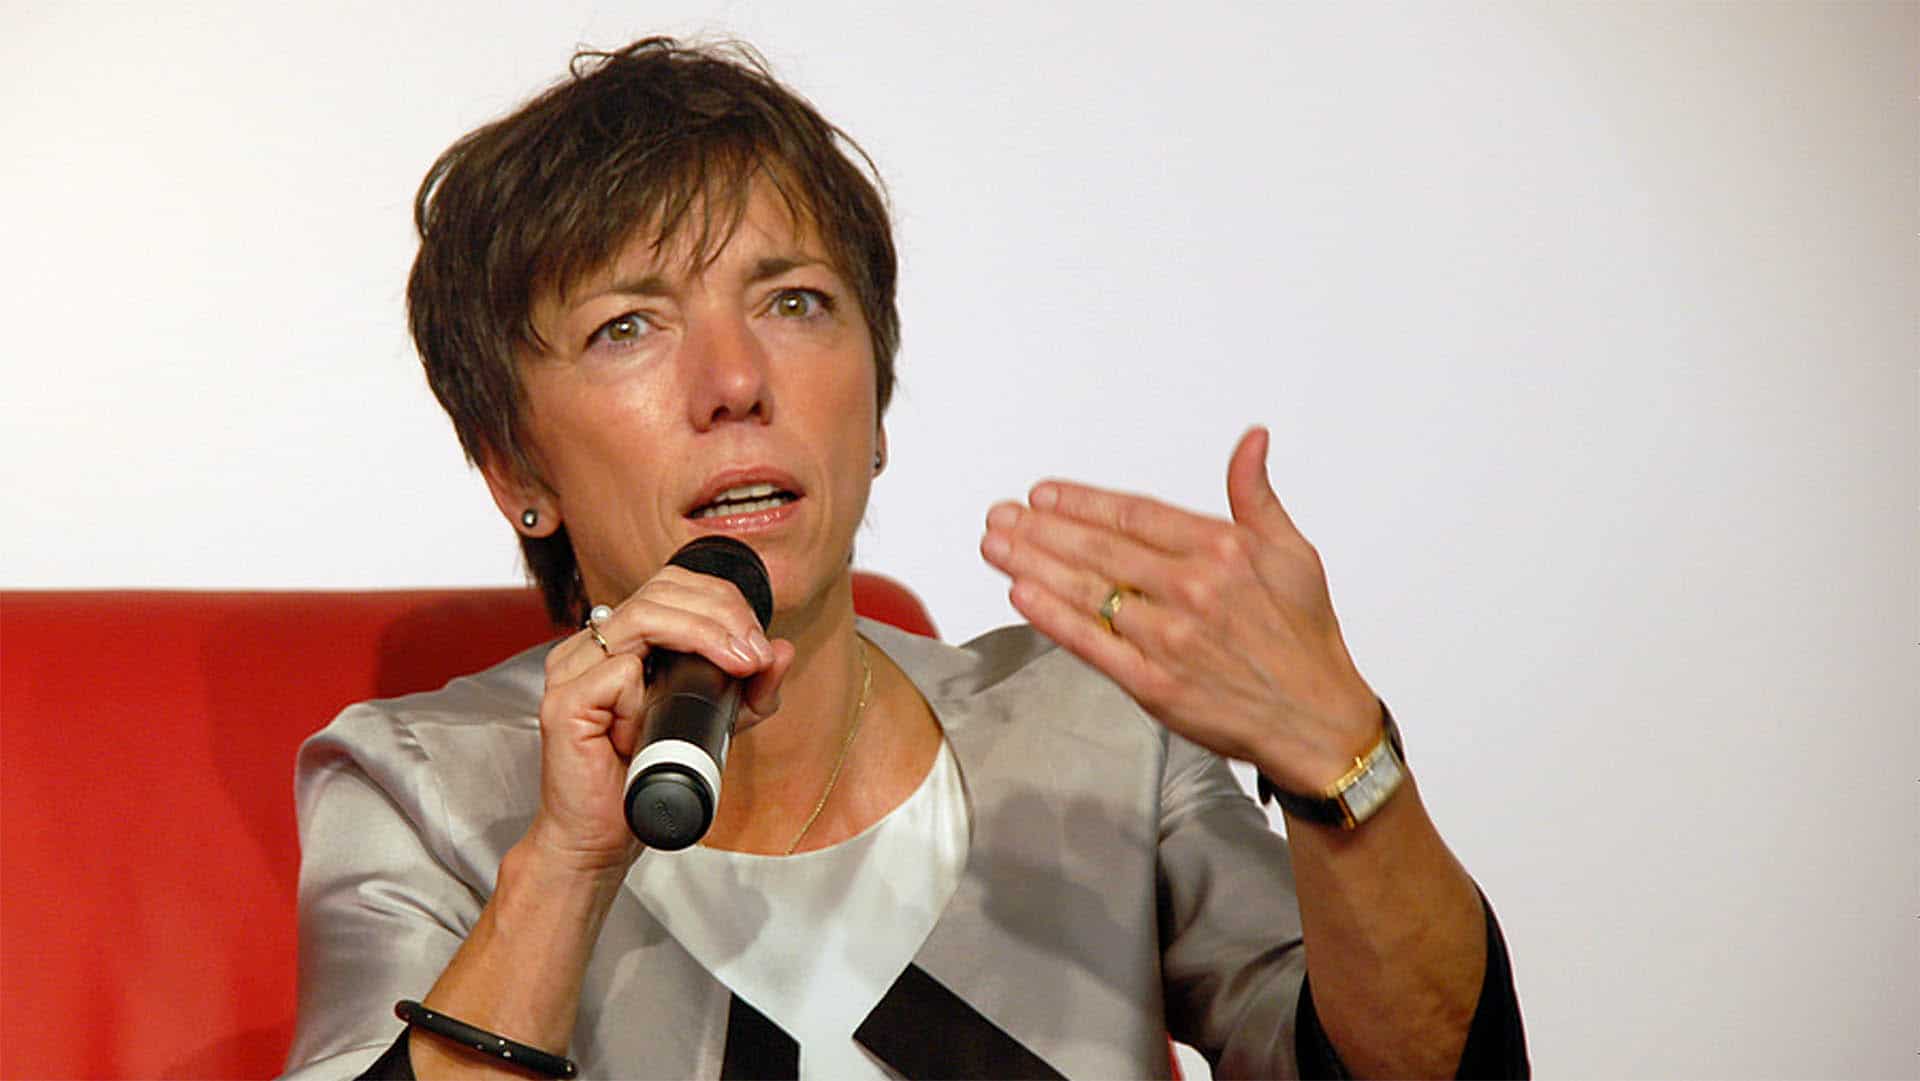 Die Theologin und ehemalige EDK-Ratsvorsitzende Margot Käßmann war beim Bild-Talk „Jetzt reden vier“ zu Gast (Archivbild)